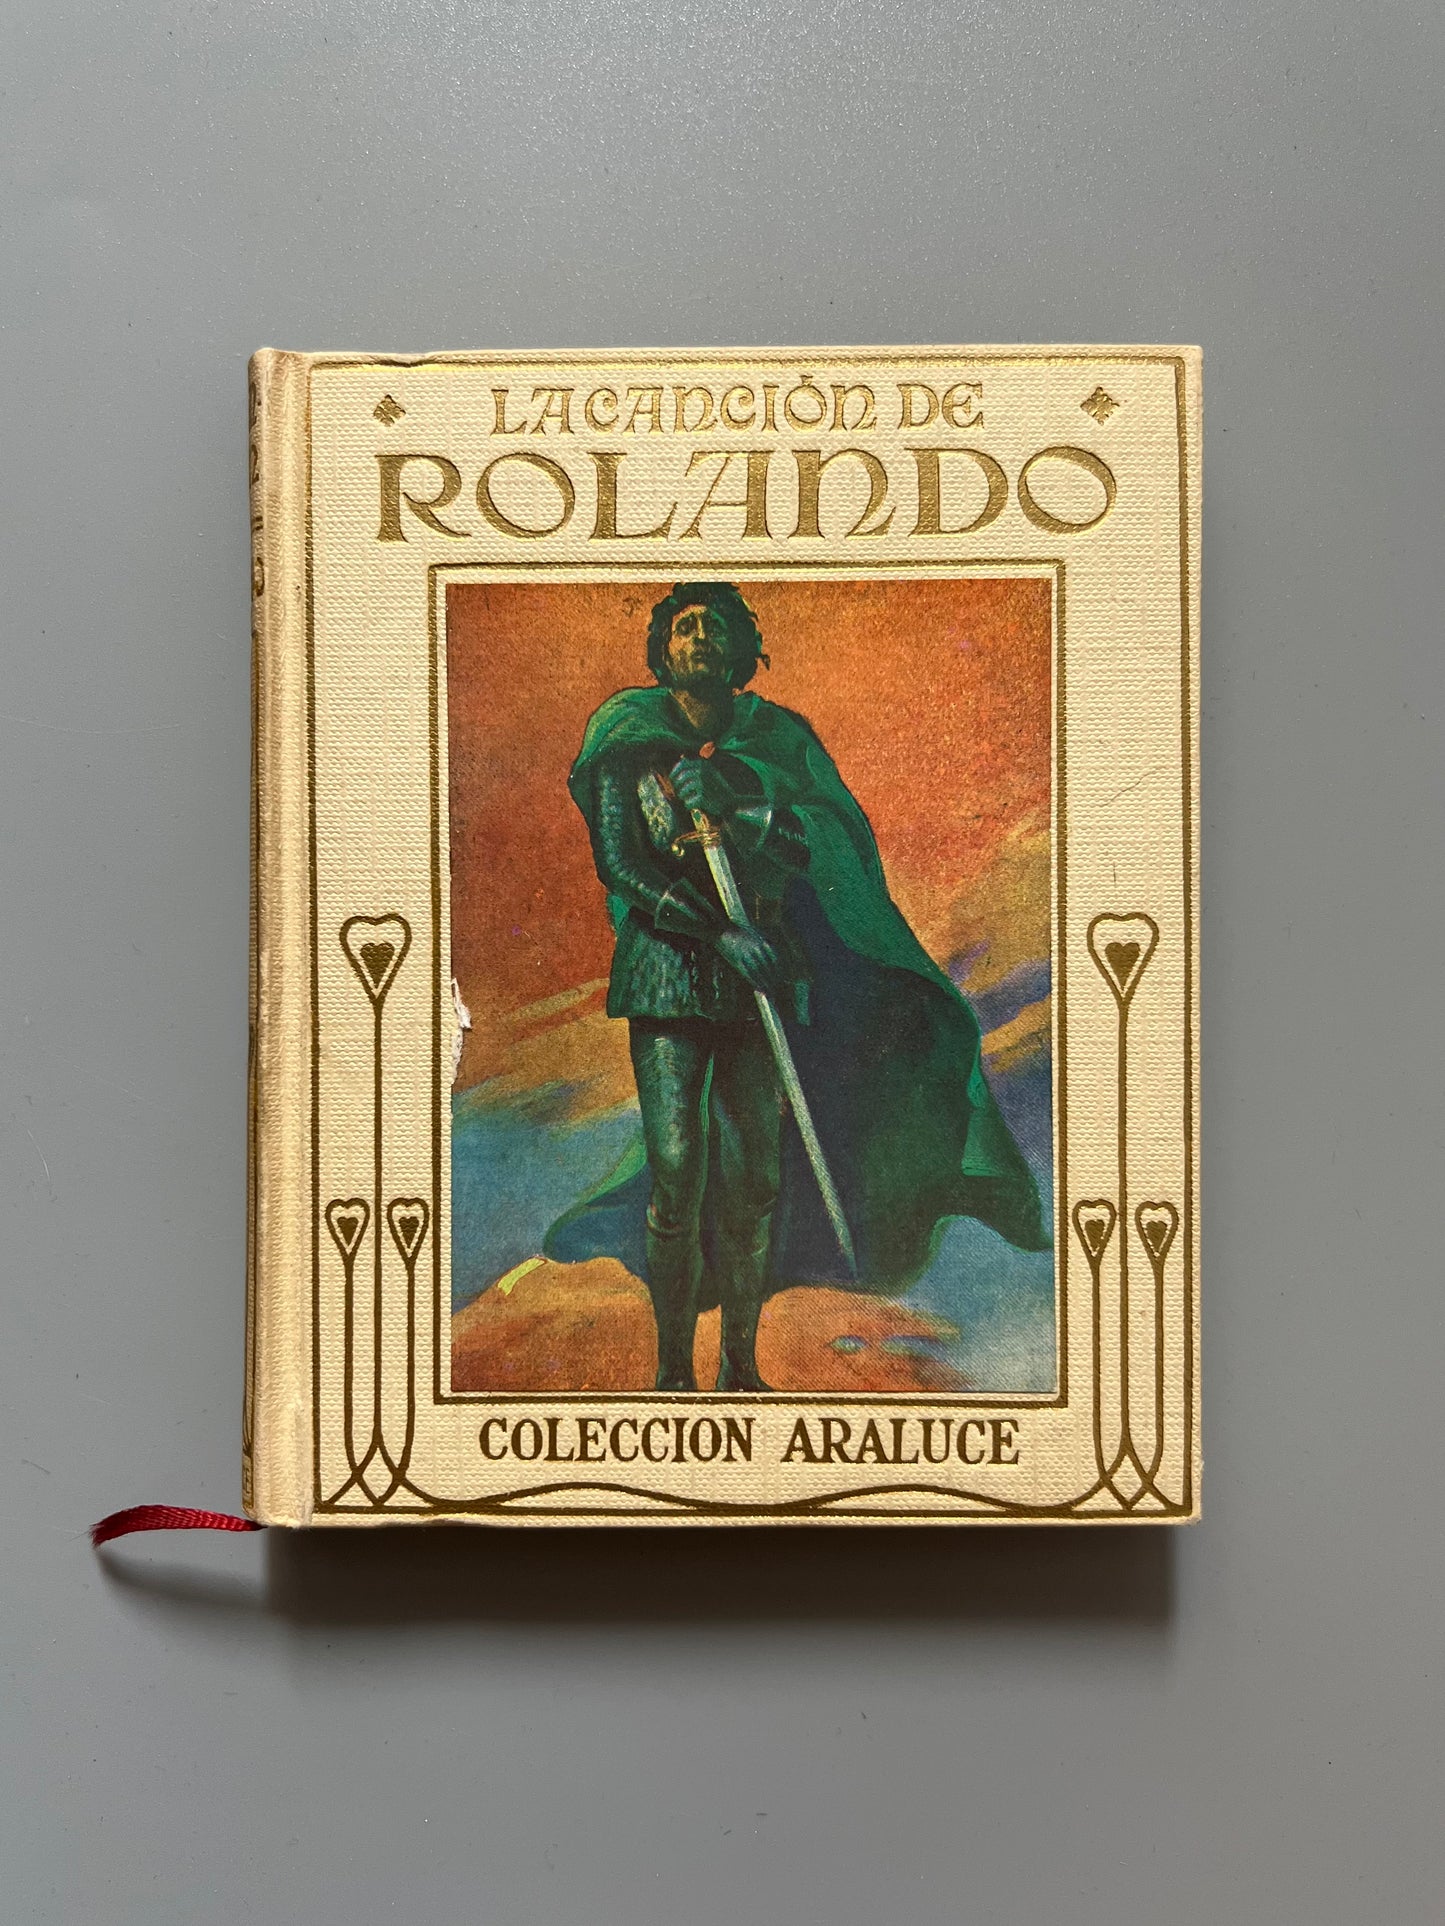 La canción de Rolando, adaptación de H. E. Marshall - Editorial Araluce, 1956